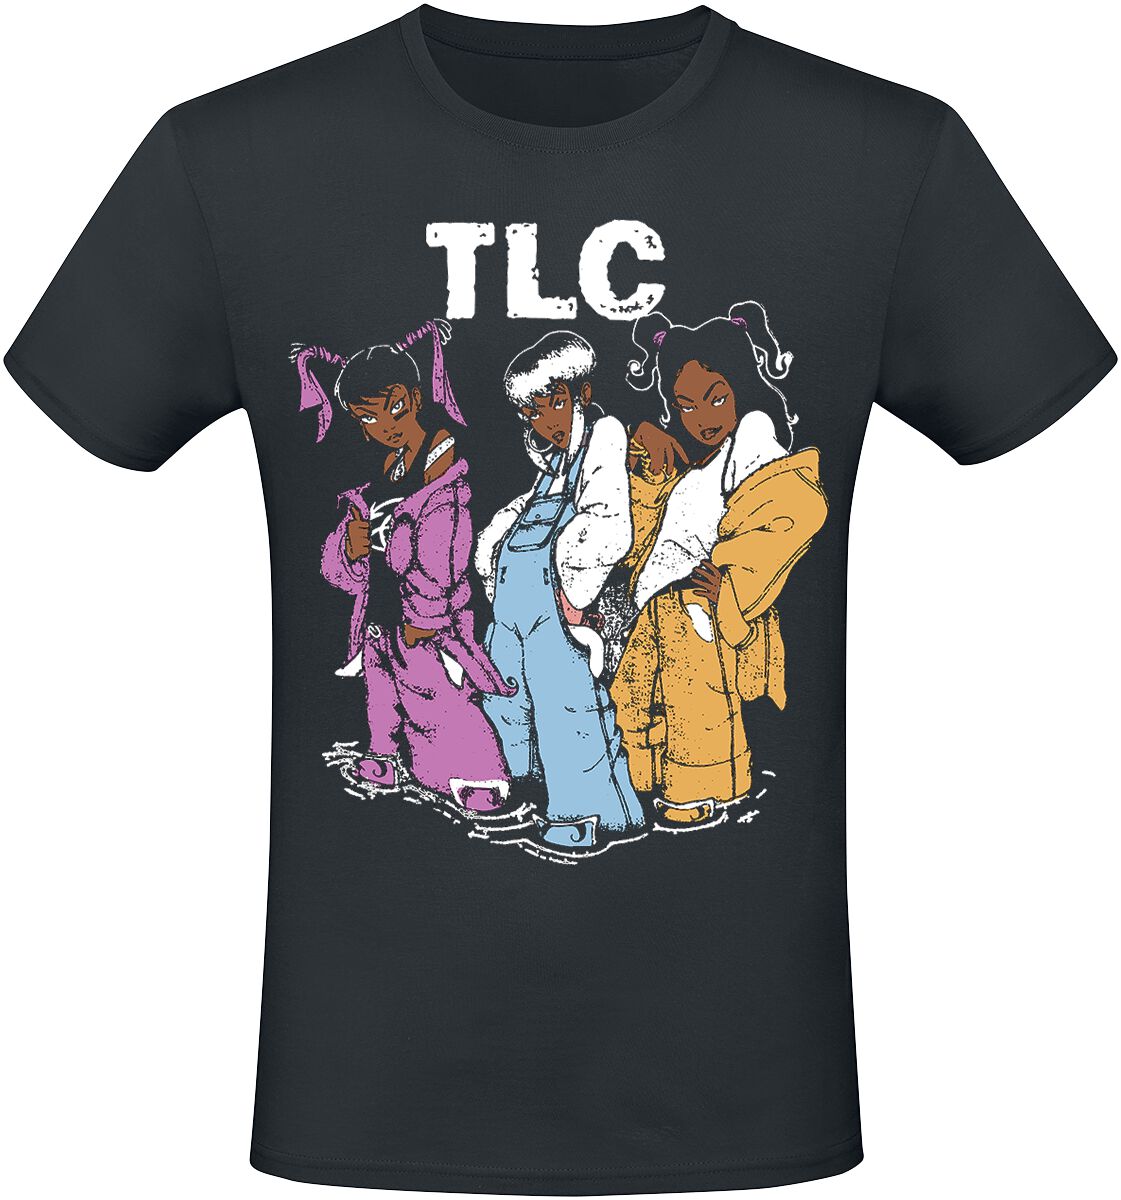 TLC T-Shirt - Cartoons - S bis 3XL - für Männer - Größe S - schwarz  - Lizenziertes Merchandise!